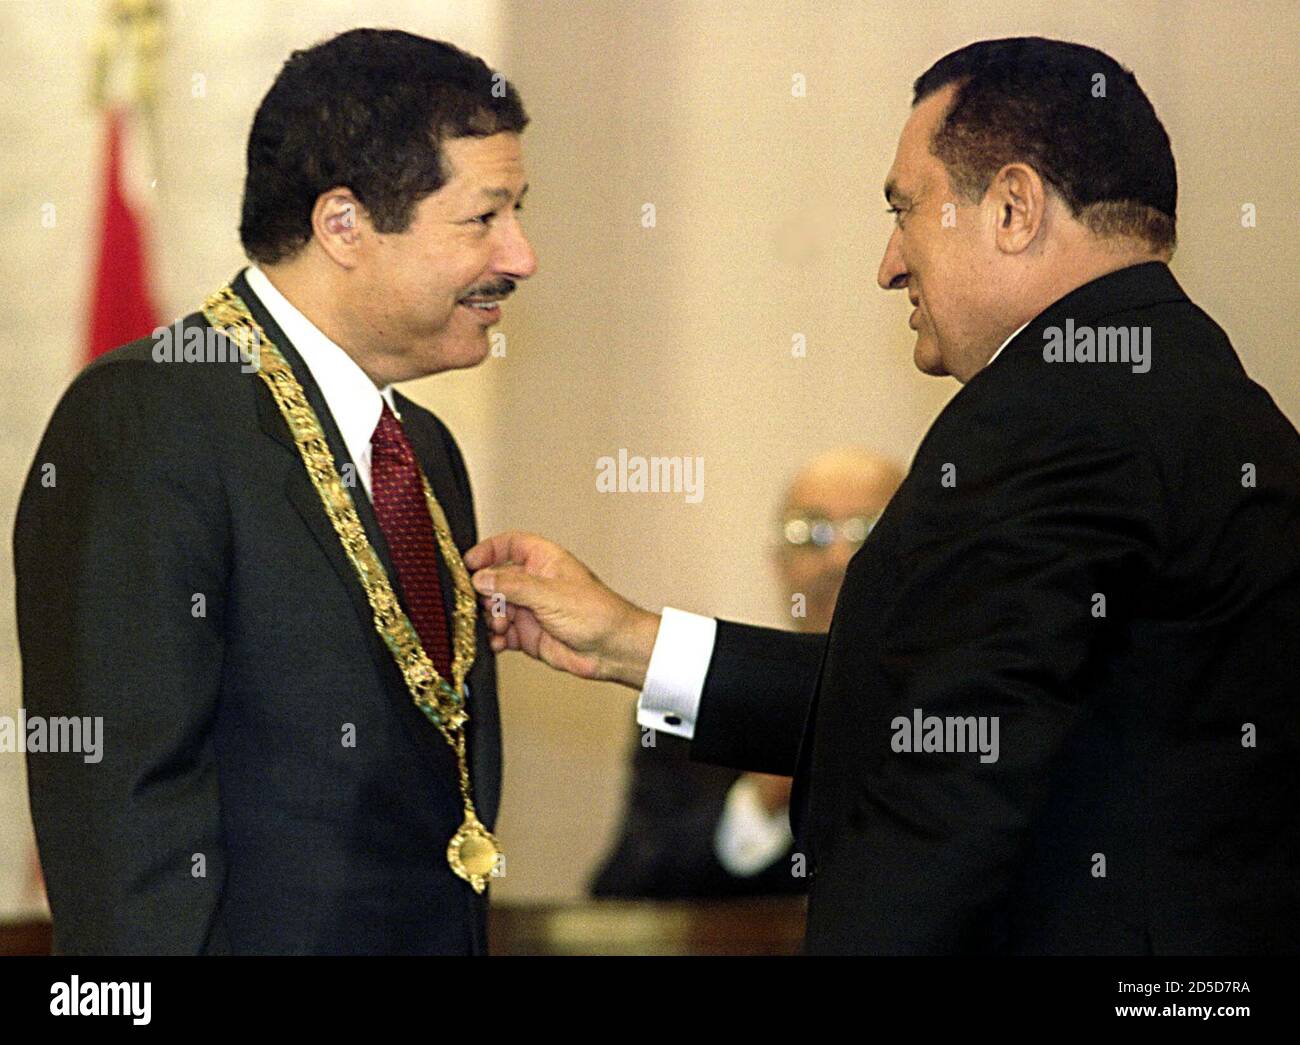 EGIPTO:CAIRO,16DEC99-Ahmed Zewail (L), ganador del premio químico egipcio, recibe el collar del Nilo de oro, el premio más prestigioso del país, del presidente egipcio Hosni Mubarak el 16 de diciembre por ganar el Premio Nobel de Química el viernes en Estocolmo. Zewail le dijo a Mubarak con broma, "para decirle la verdad, es bastante pesado (el collar)". Zewail es el segundo premio Nobel egipcio después de que el novelista Naguib Mahfouz ganó el premio de literatura en 1988. AN Foto de stock